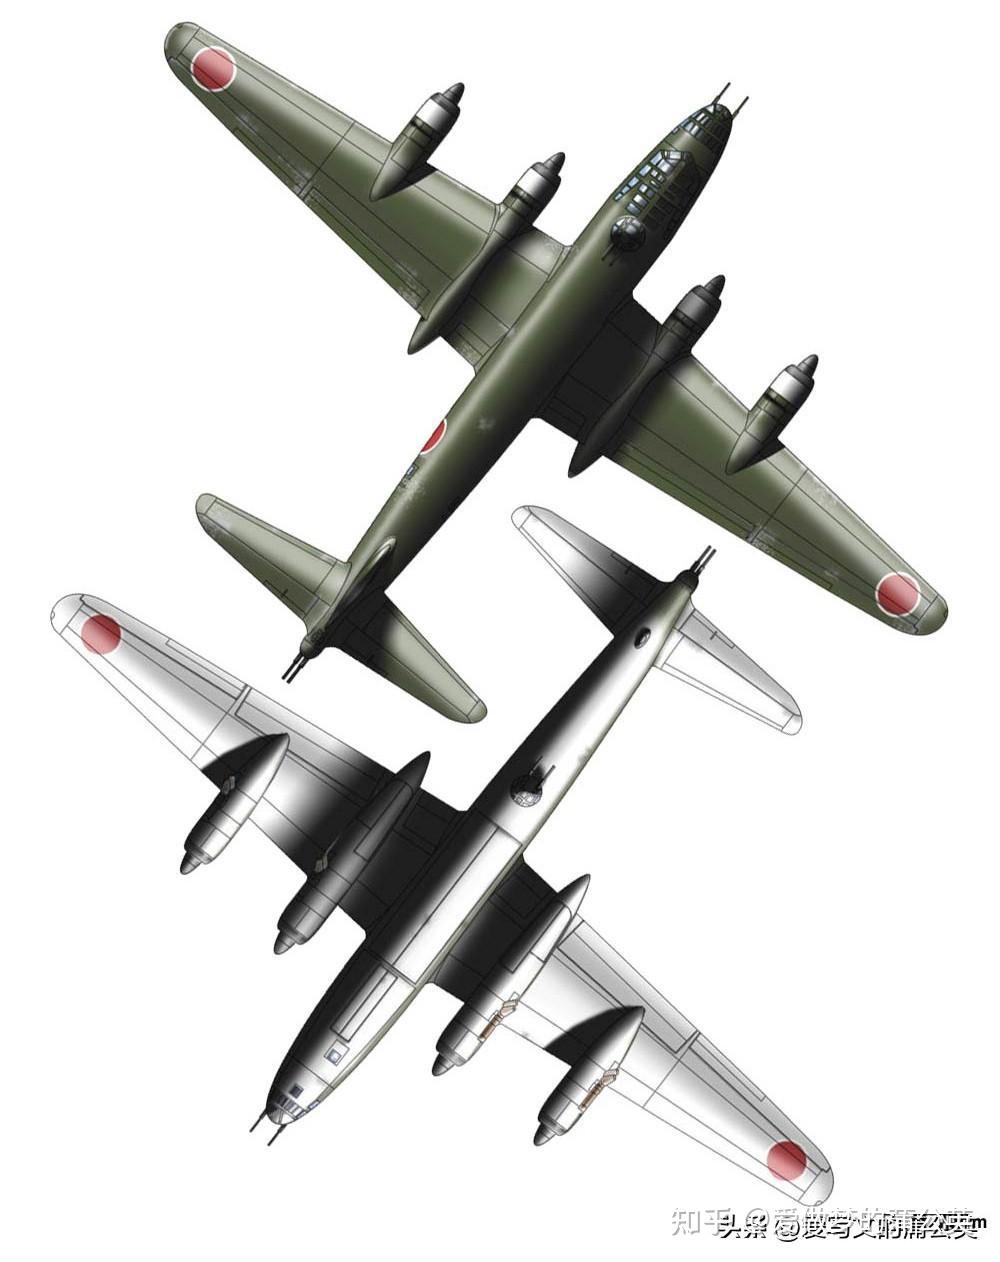 二战军机大全——日本海军攻击机和轰炸机(二)